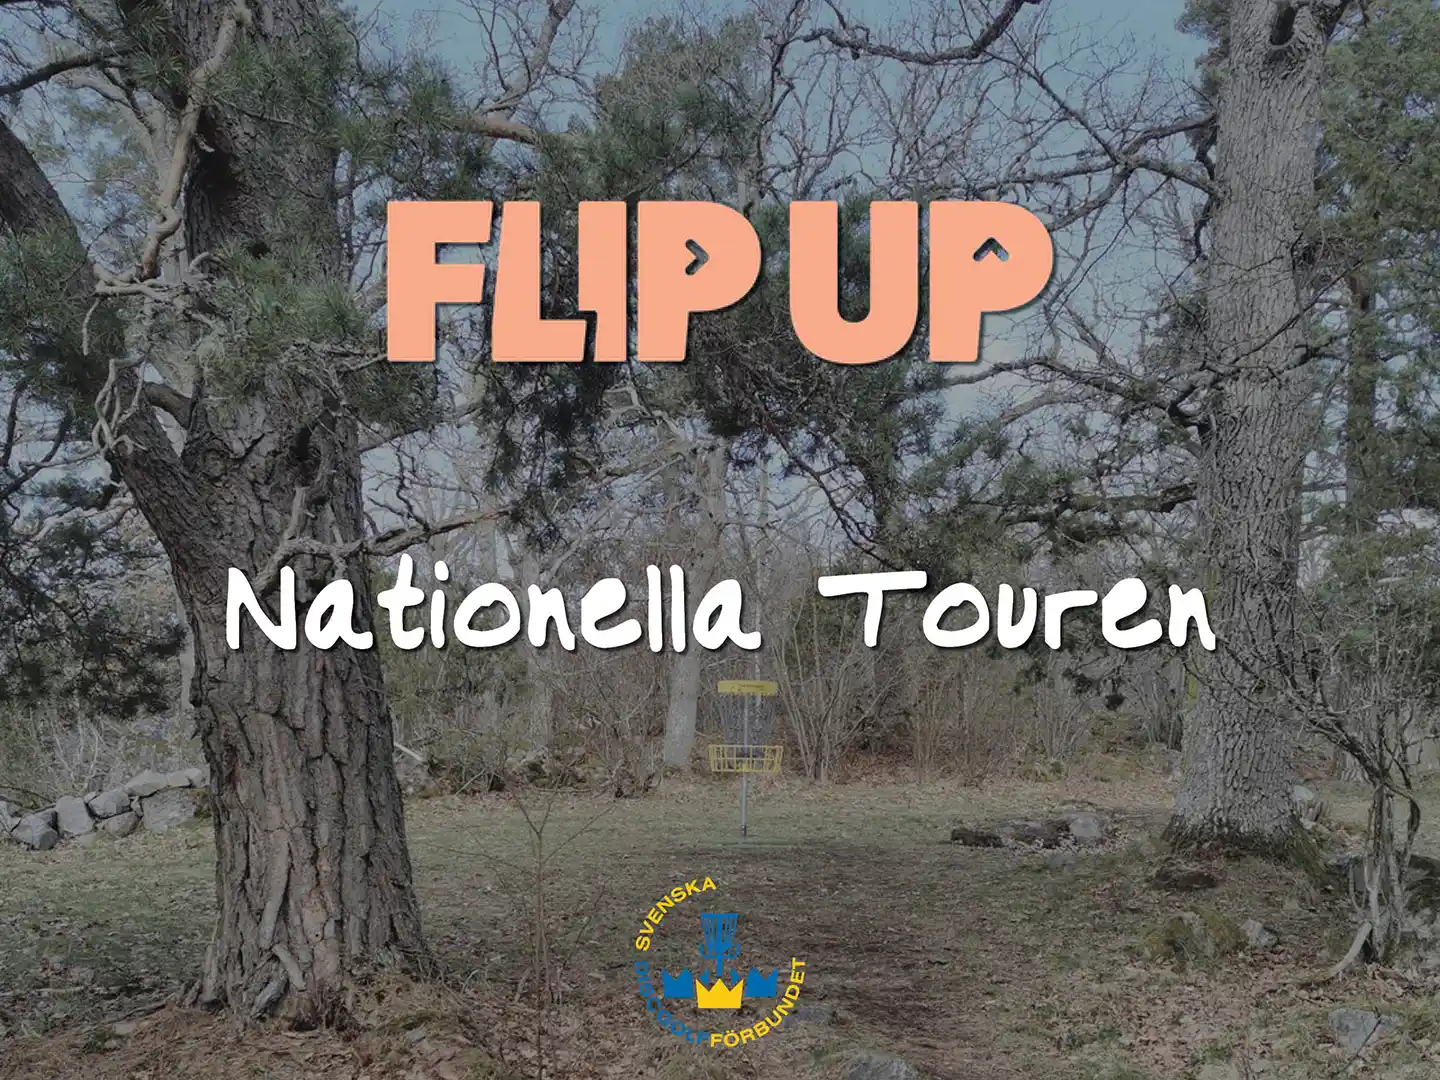 Livesänd efterproduktion av Nationella Touren via Flip Up